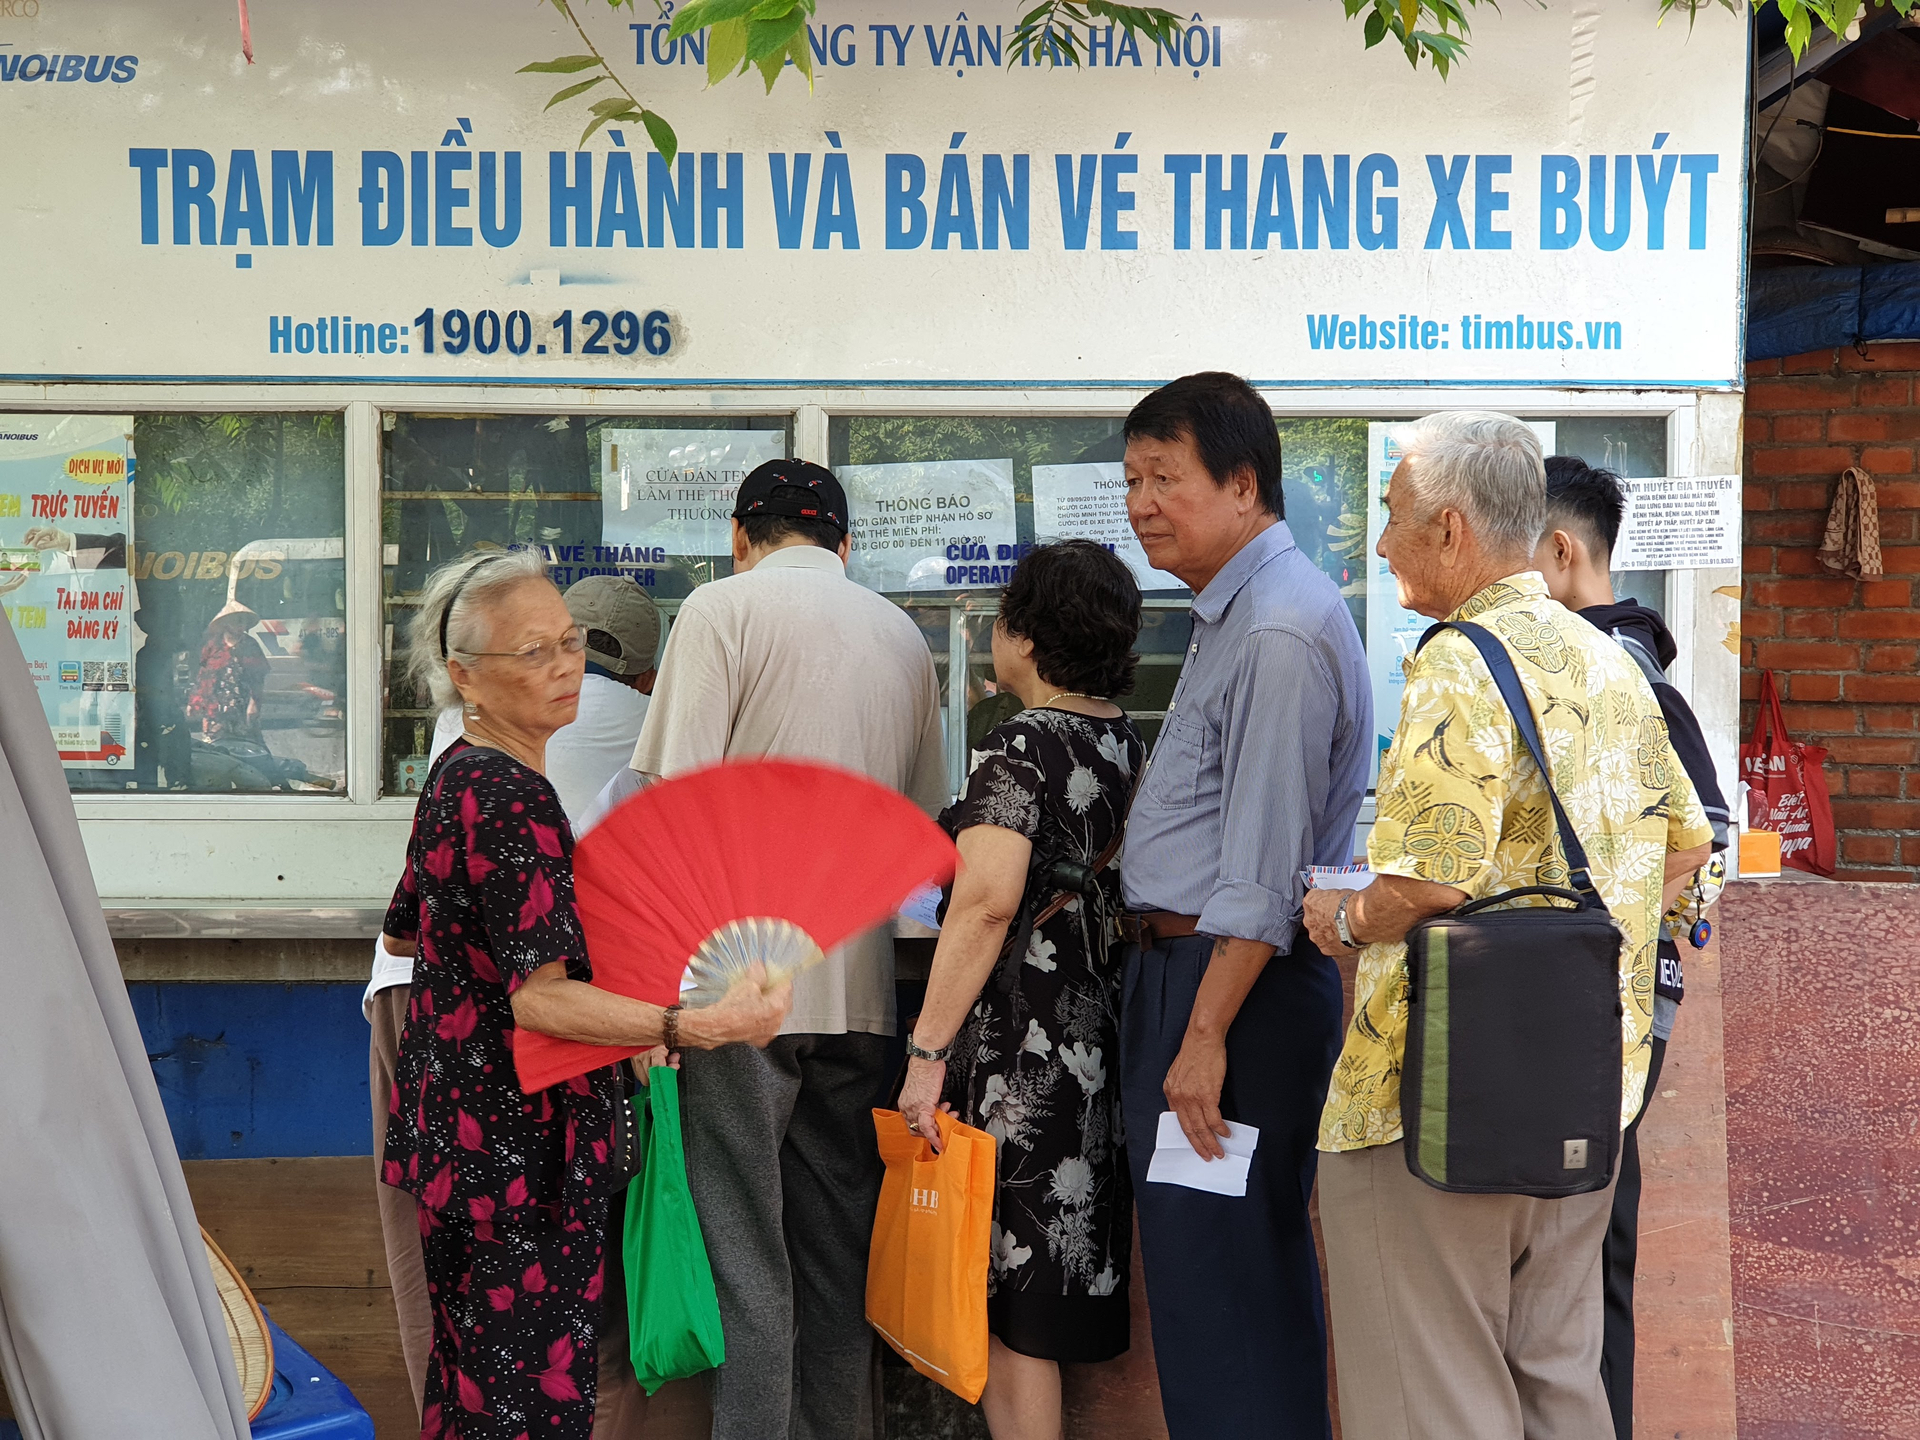 Xe buýt Hà Nội hiện đã miễn phí cho 5 nhóm hành khách yếu thế. Sắp tới, mọi người dân có thể đi lại miễn phí trên xe buýt, tàu điện vào các dịp nghỉ lễ lớn.